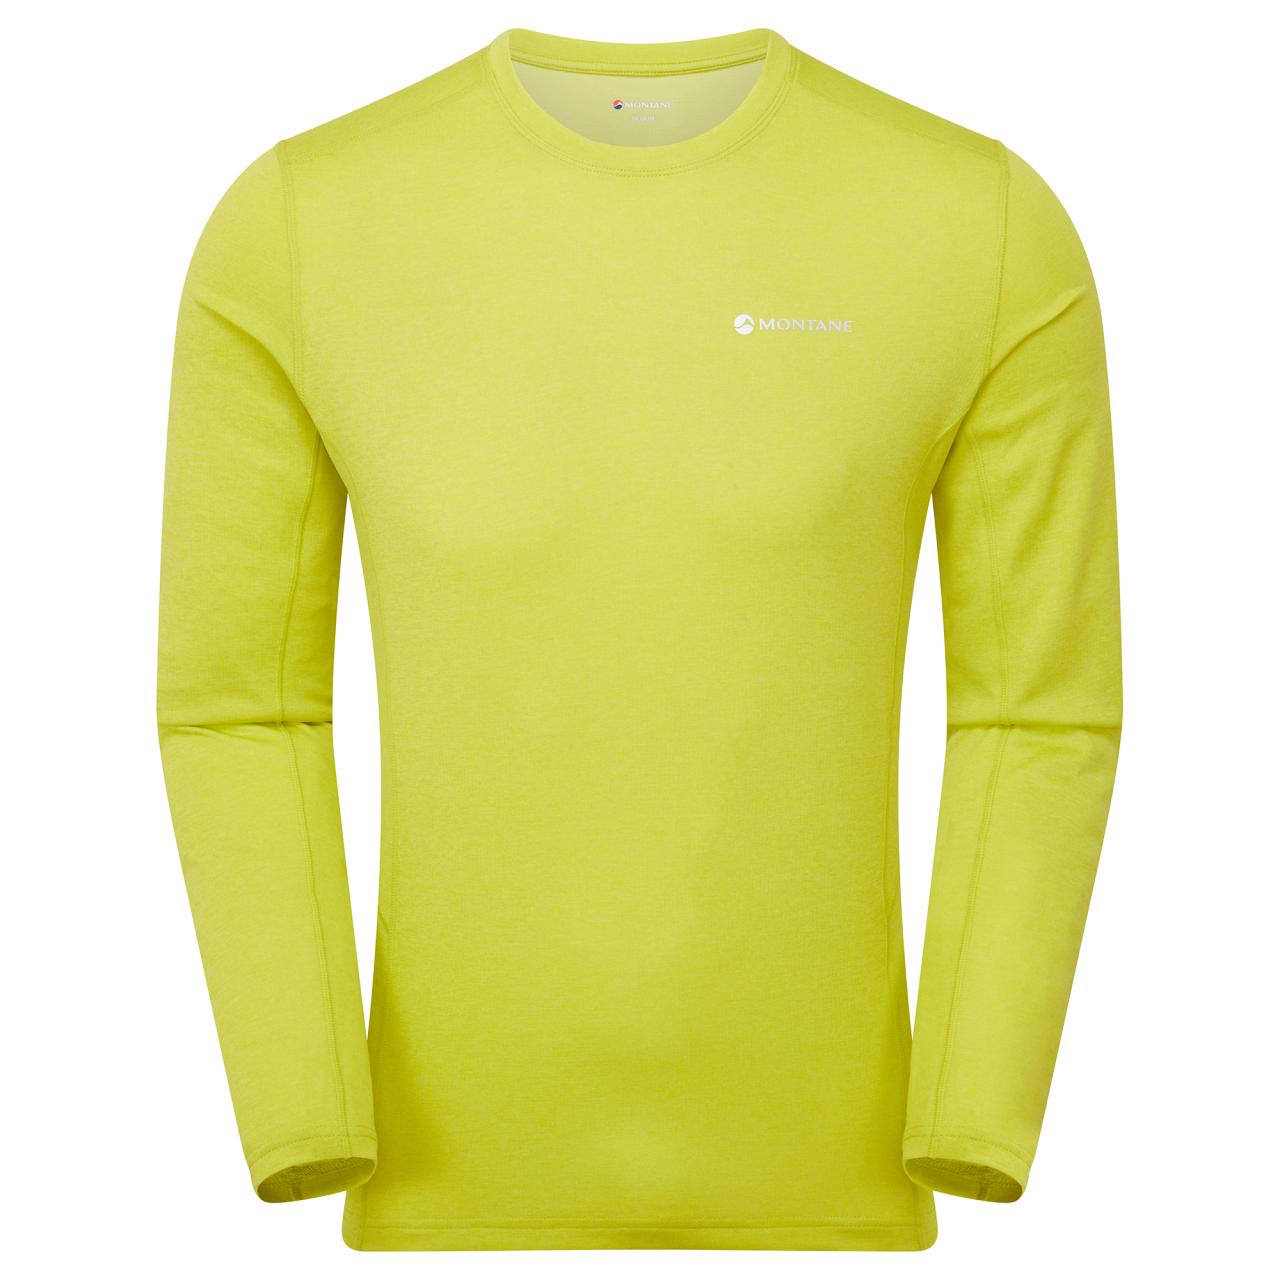 DART LONG SLEEVE T-SHIRT-CITRUS SPRING-L pánské triko dlouhý ruk. žlutozelené